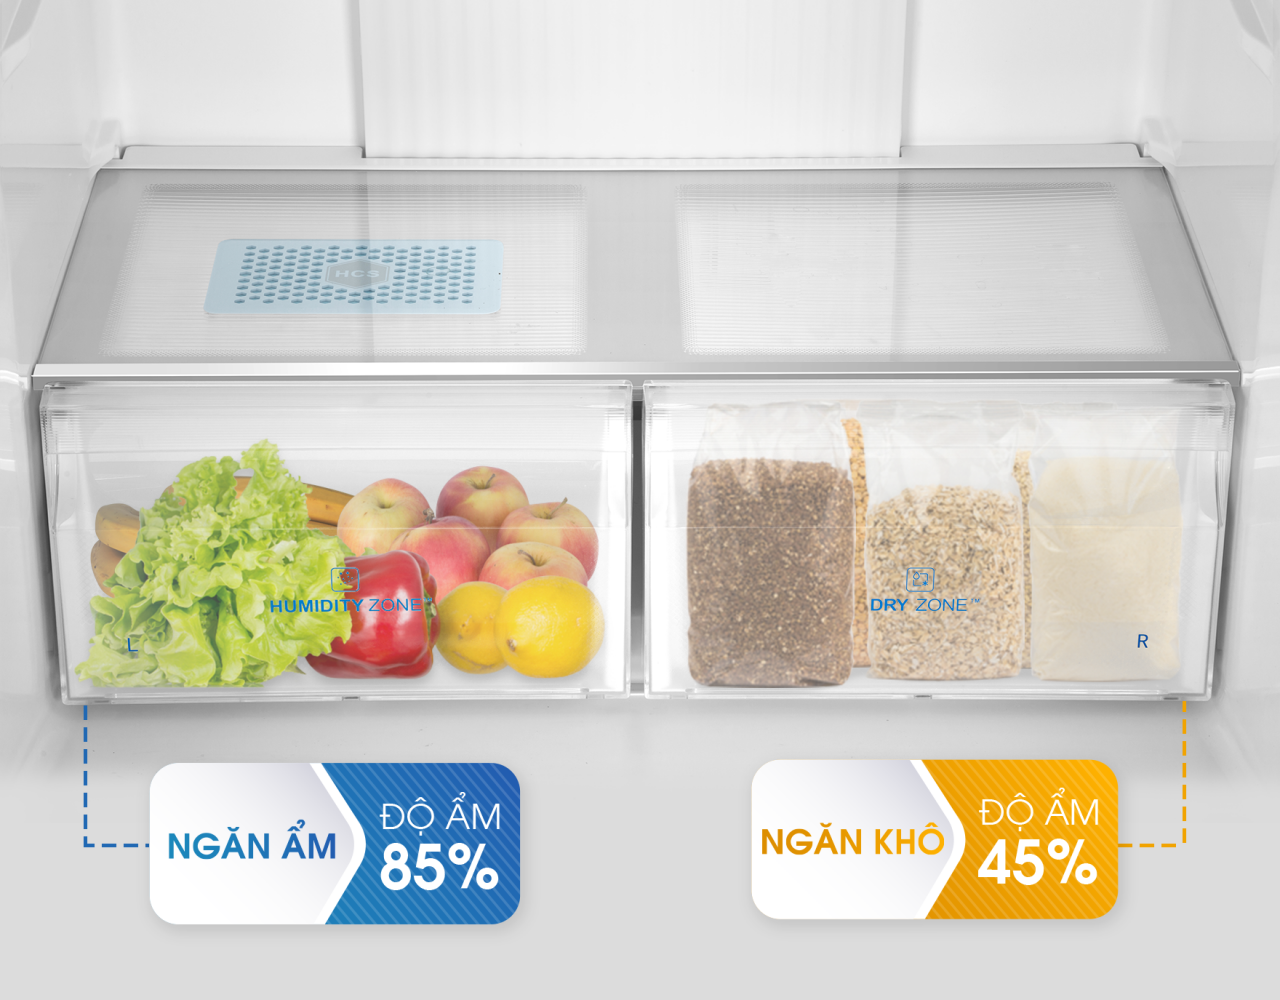 Tủ lạnh Aqua có tốt không Các công nghệ và tính năng nổi bật của tủ lạnh Aqua-khô và ẩm